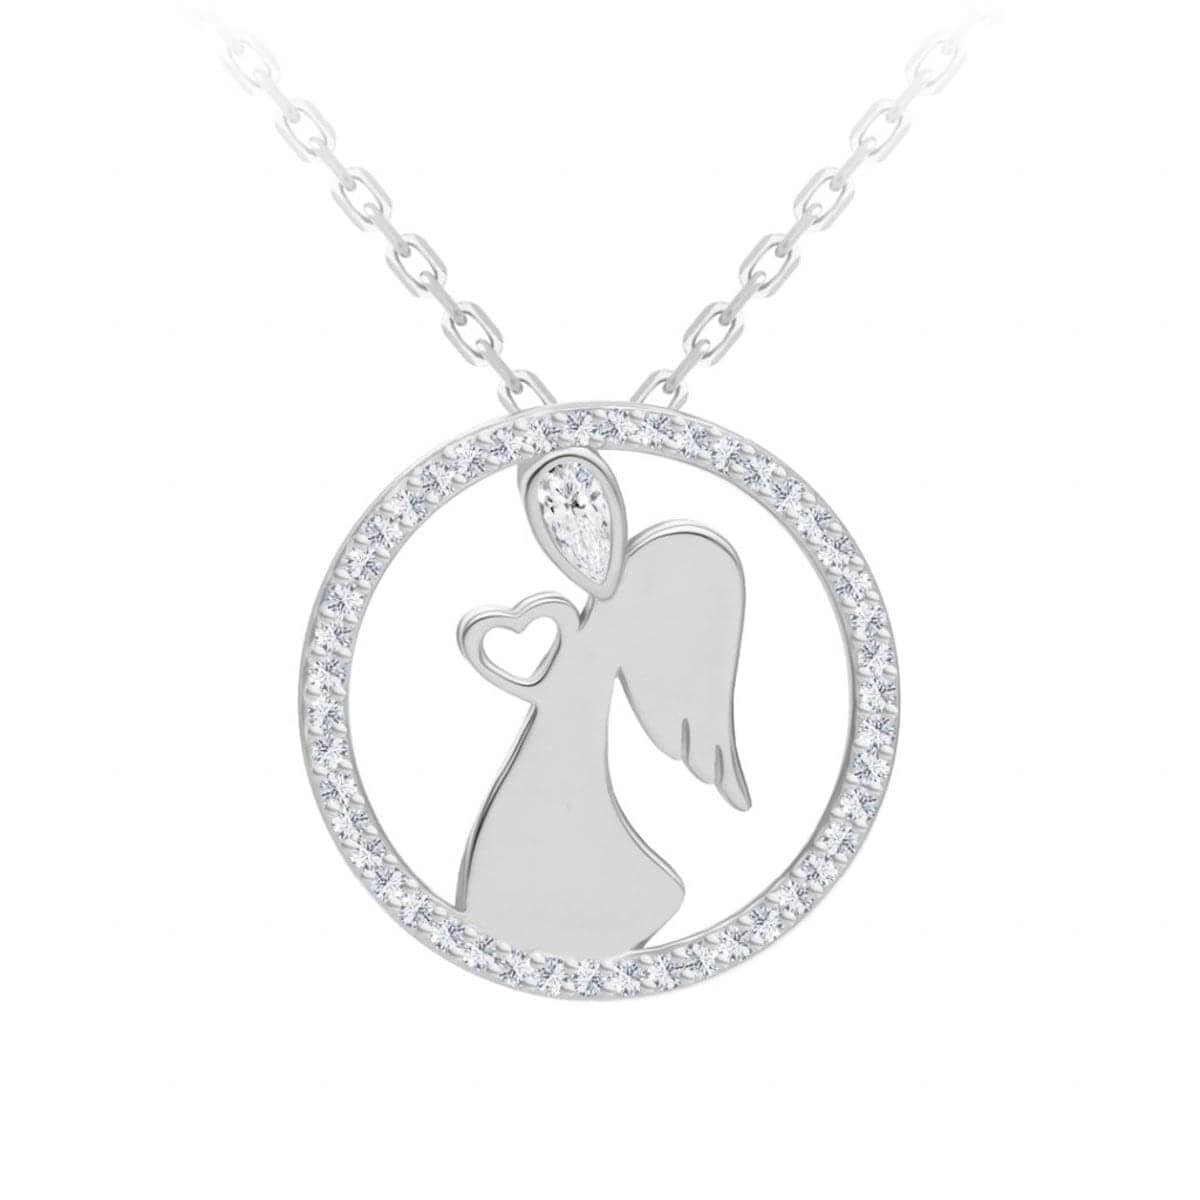 Preciosa Něžný stříbrný náhrdelník Angelic Love 5295 00